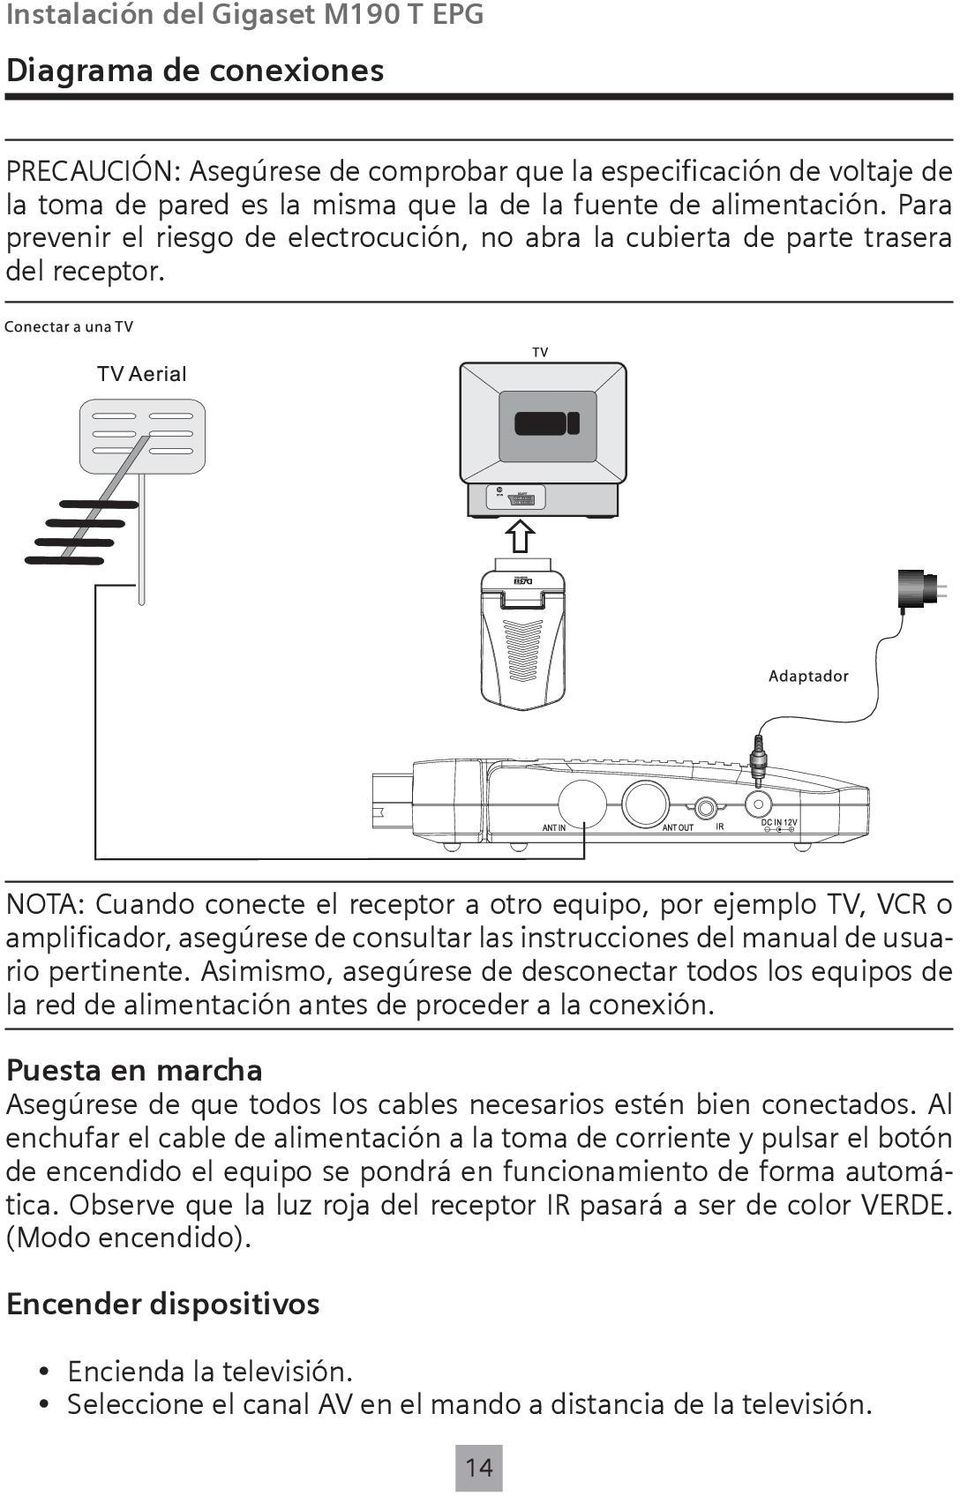 NOTA: Cuando conecte el receptor a otro equipo, por ejemplo TV, VCR o amplificador, asegúrese de consultar las instrucciones del manual de usuario pertinente.